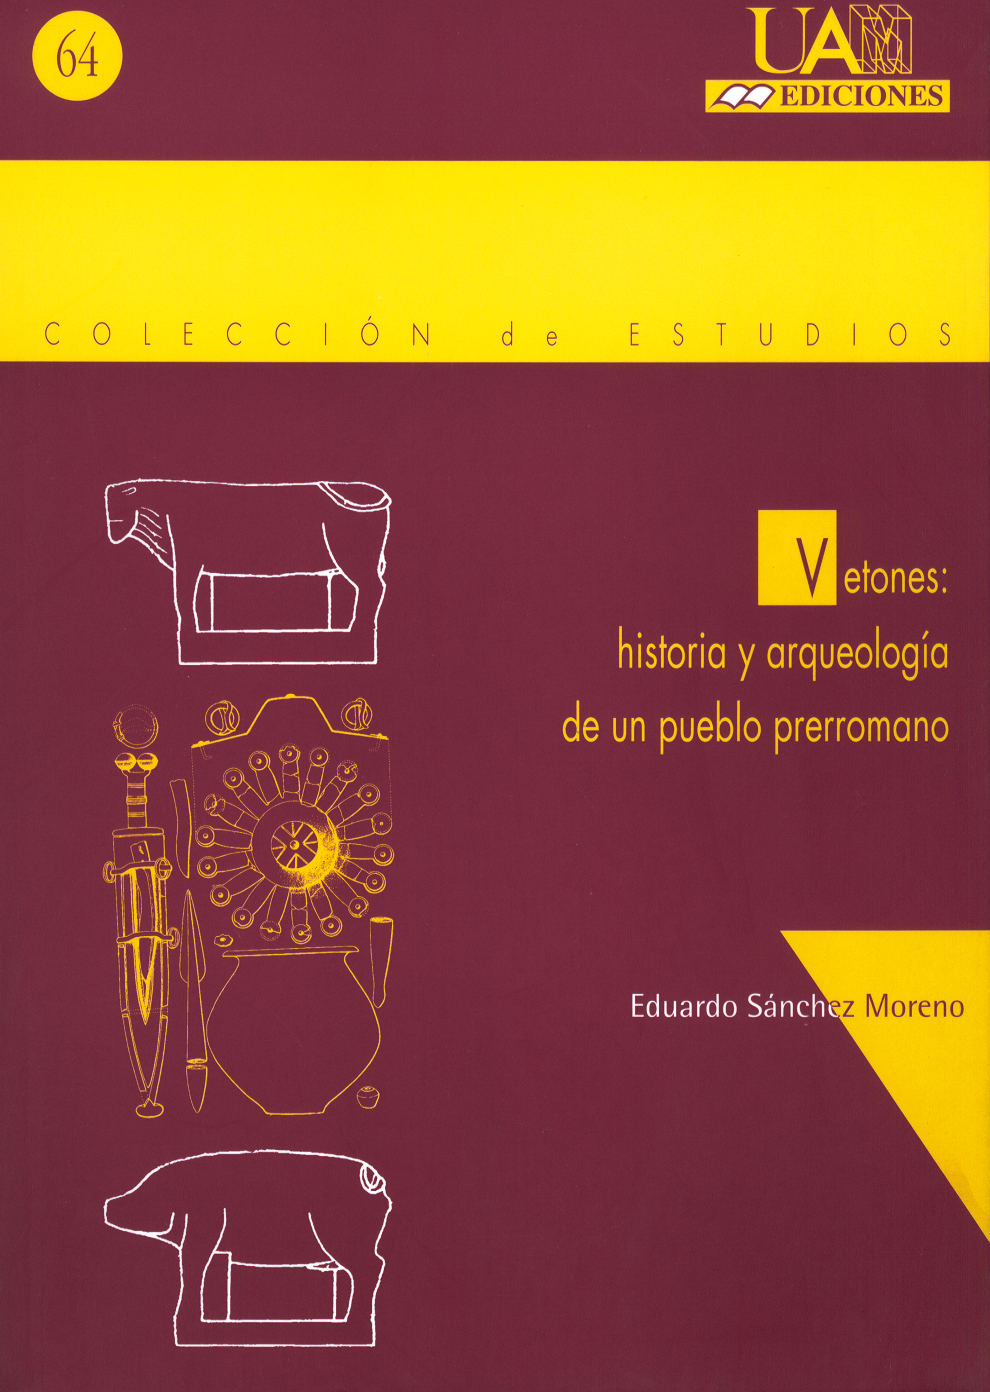 Vetones: Historia y arqueologia de un pueblo prerromano.